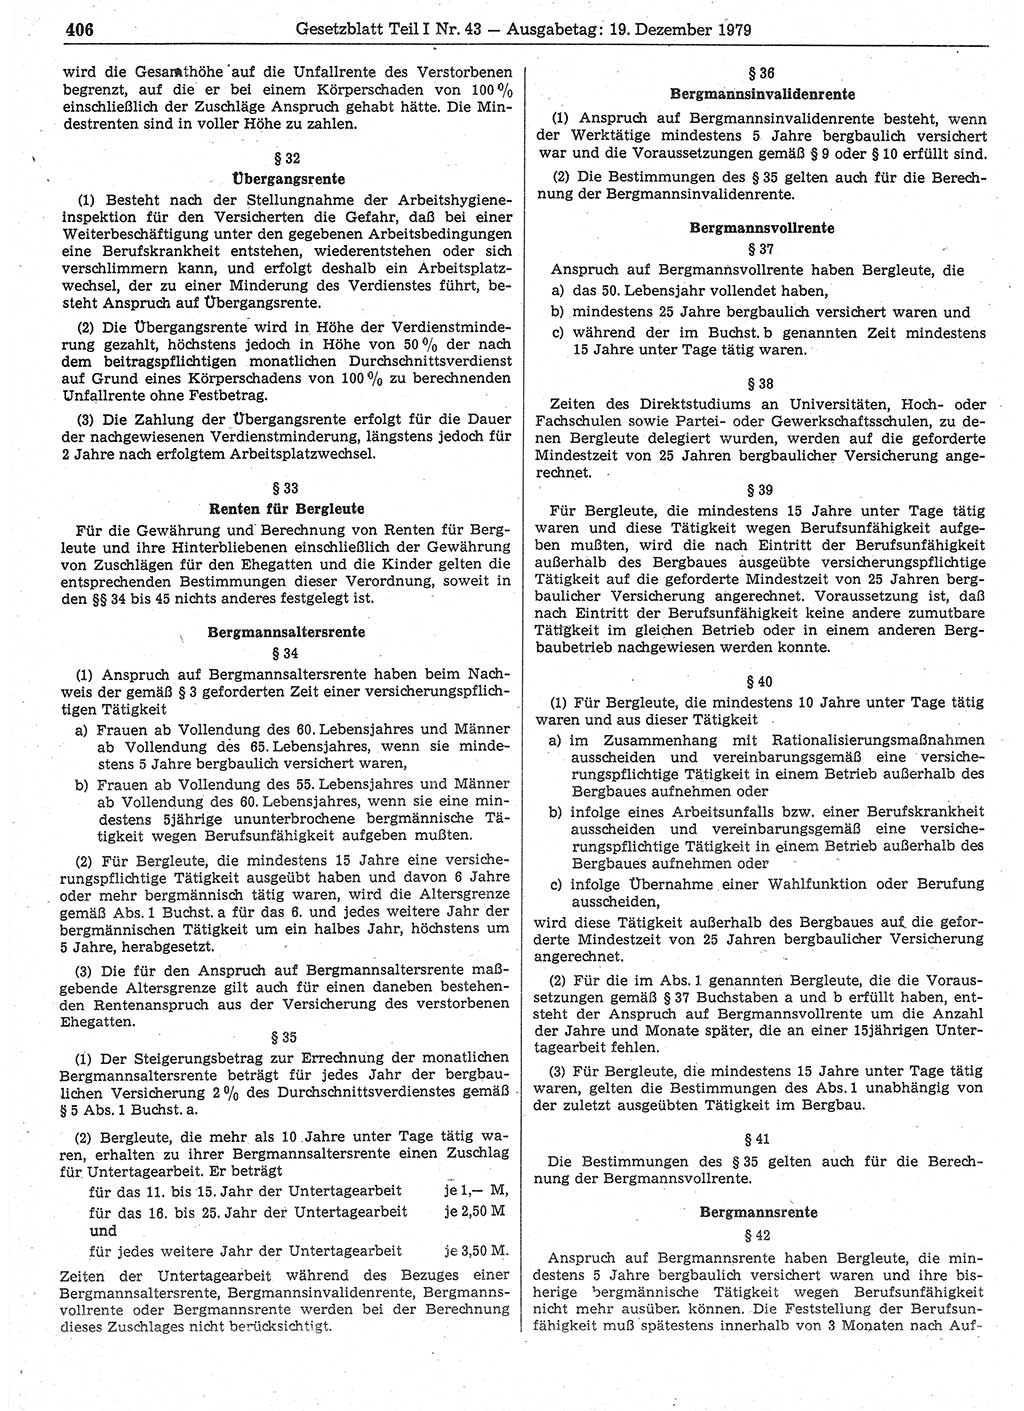 Gesetzblatt (GBl.) der Deutschen Demokratischen Republik (DDR) Teil Ⅰ 1979, Seite 406 (GBl. DDR Ⅰ 1979, S. 406)